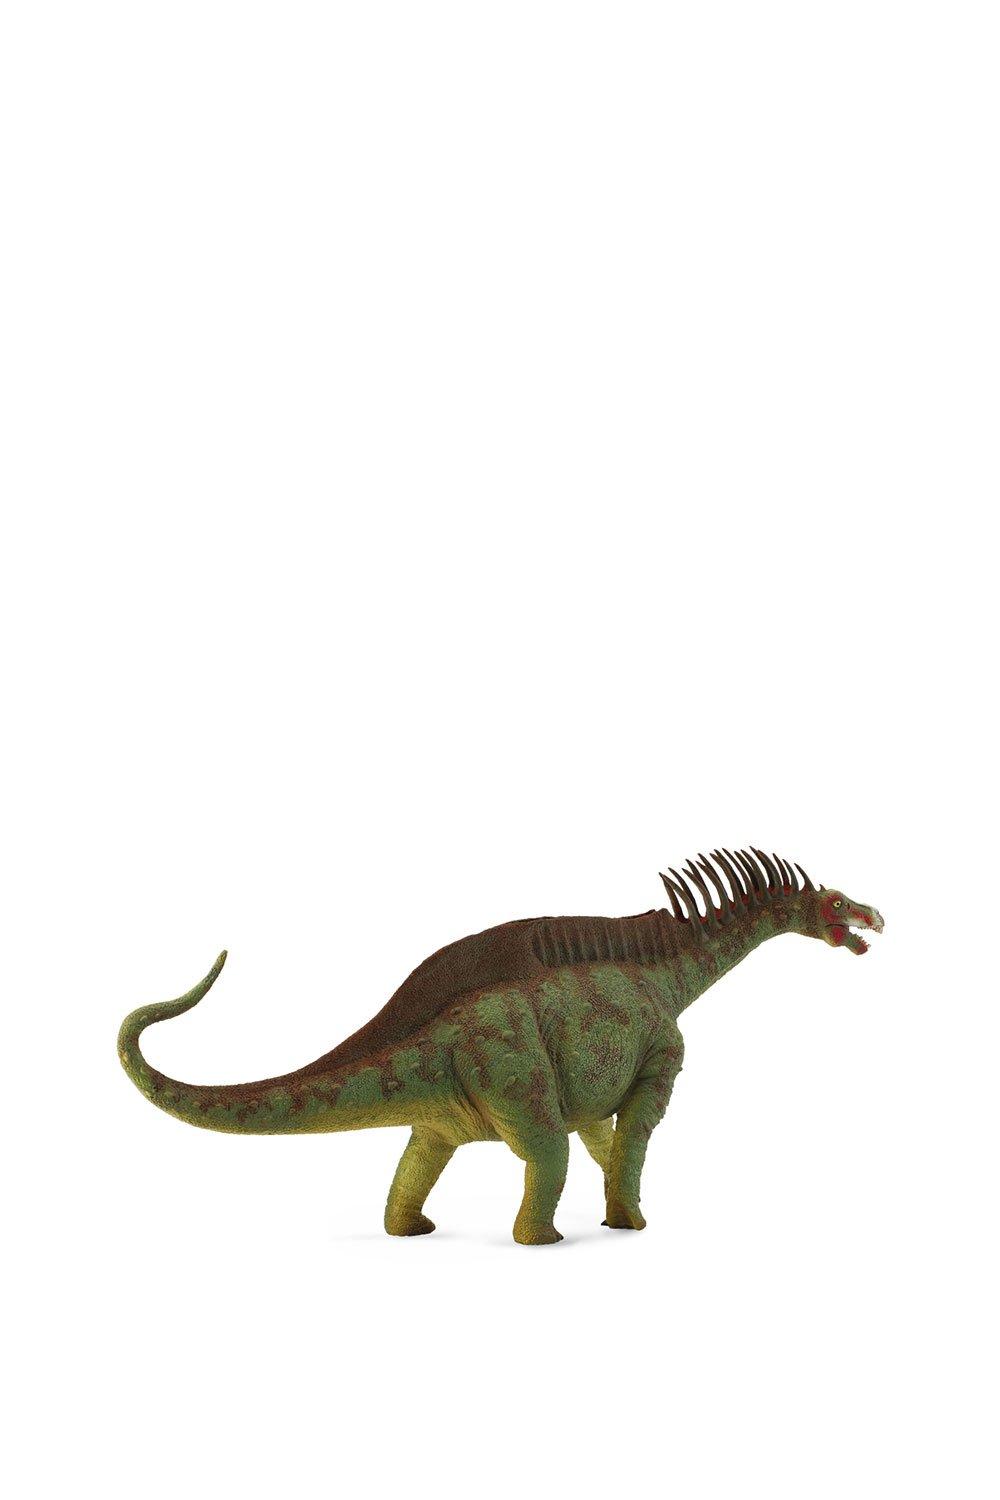 Amargasaurus Dinosaur Toy